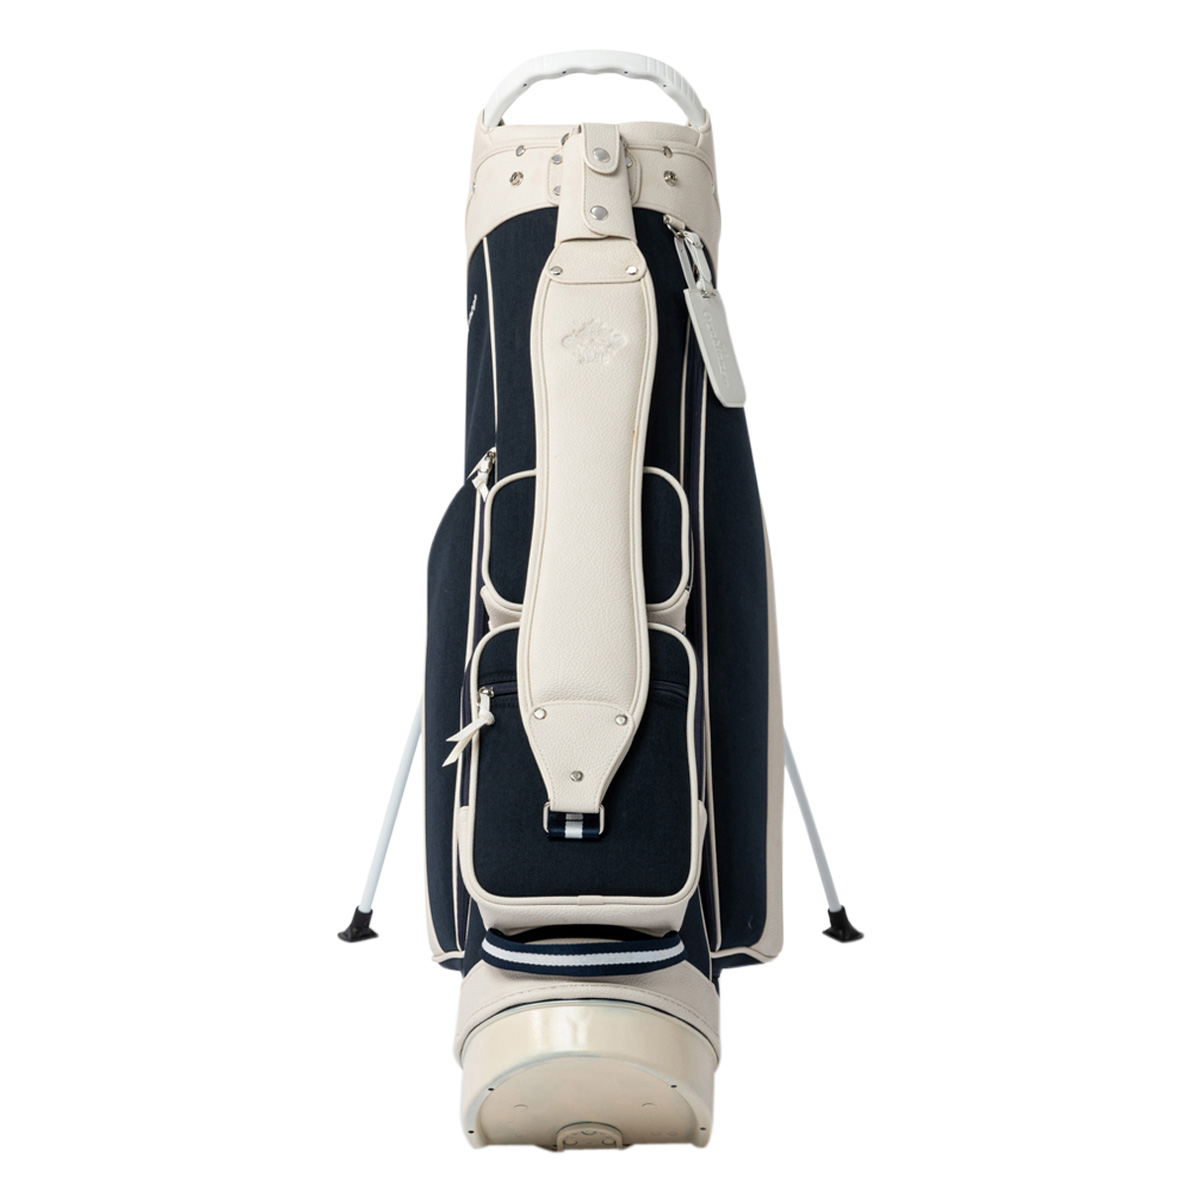 オロビアンコ ゴルフ キャディバッグ スタンドタイプ 5分割 8.5型 46インチ 2.8kg OG-CB1 メンズ 83162 Orobianco  ゴルフライン ゴルフバッグ